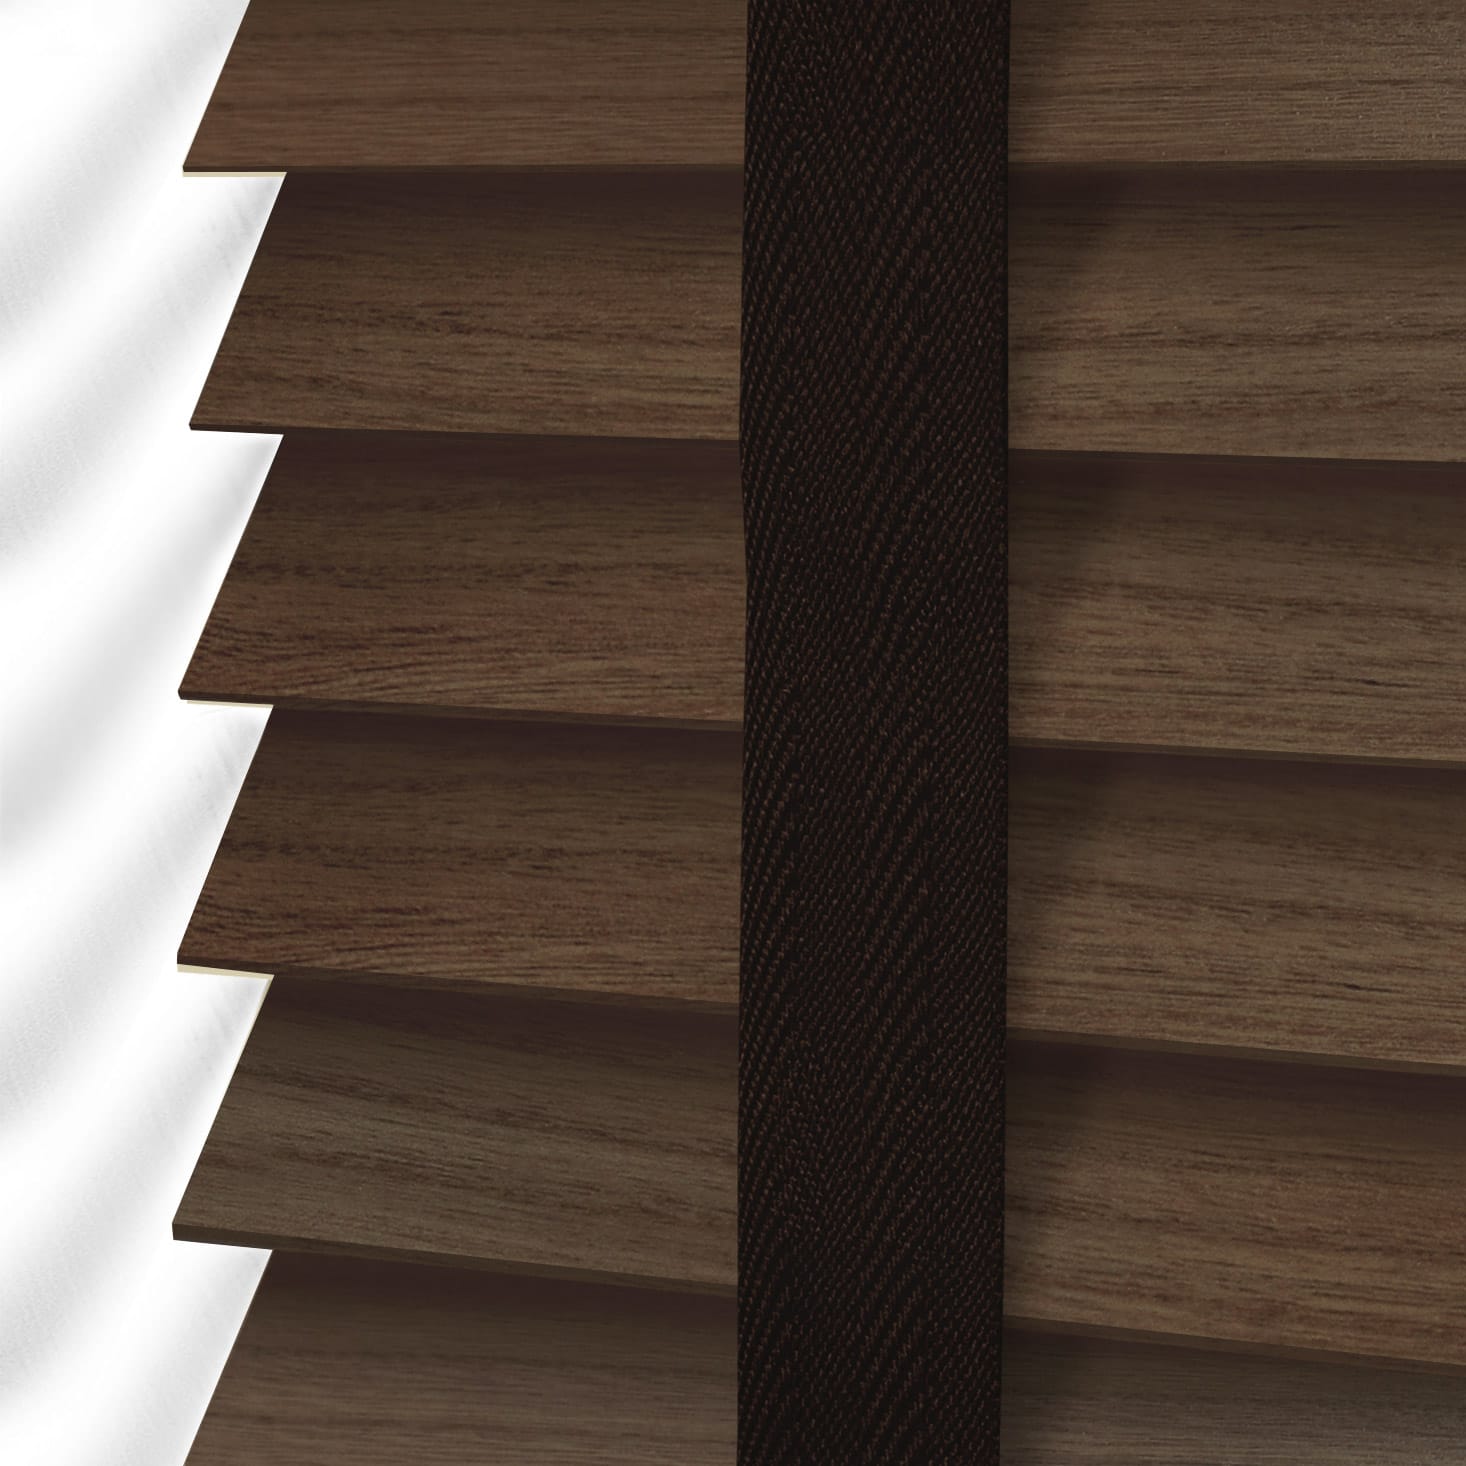 Rèm gỗ với hệ thống đai rèm đảm bảo chắc chắn